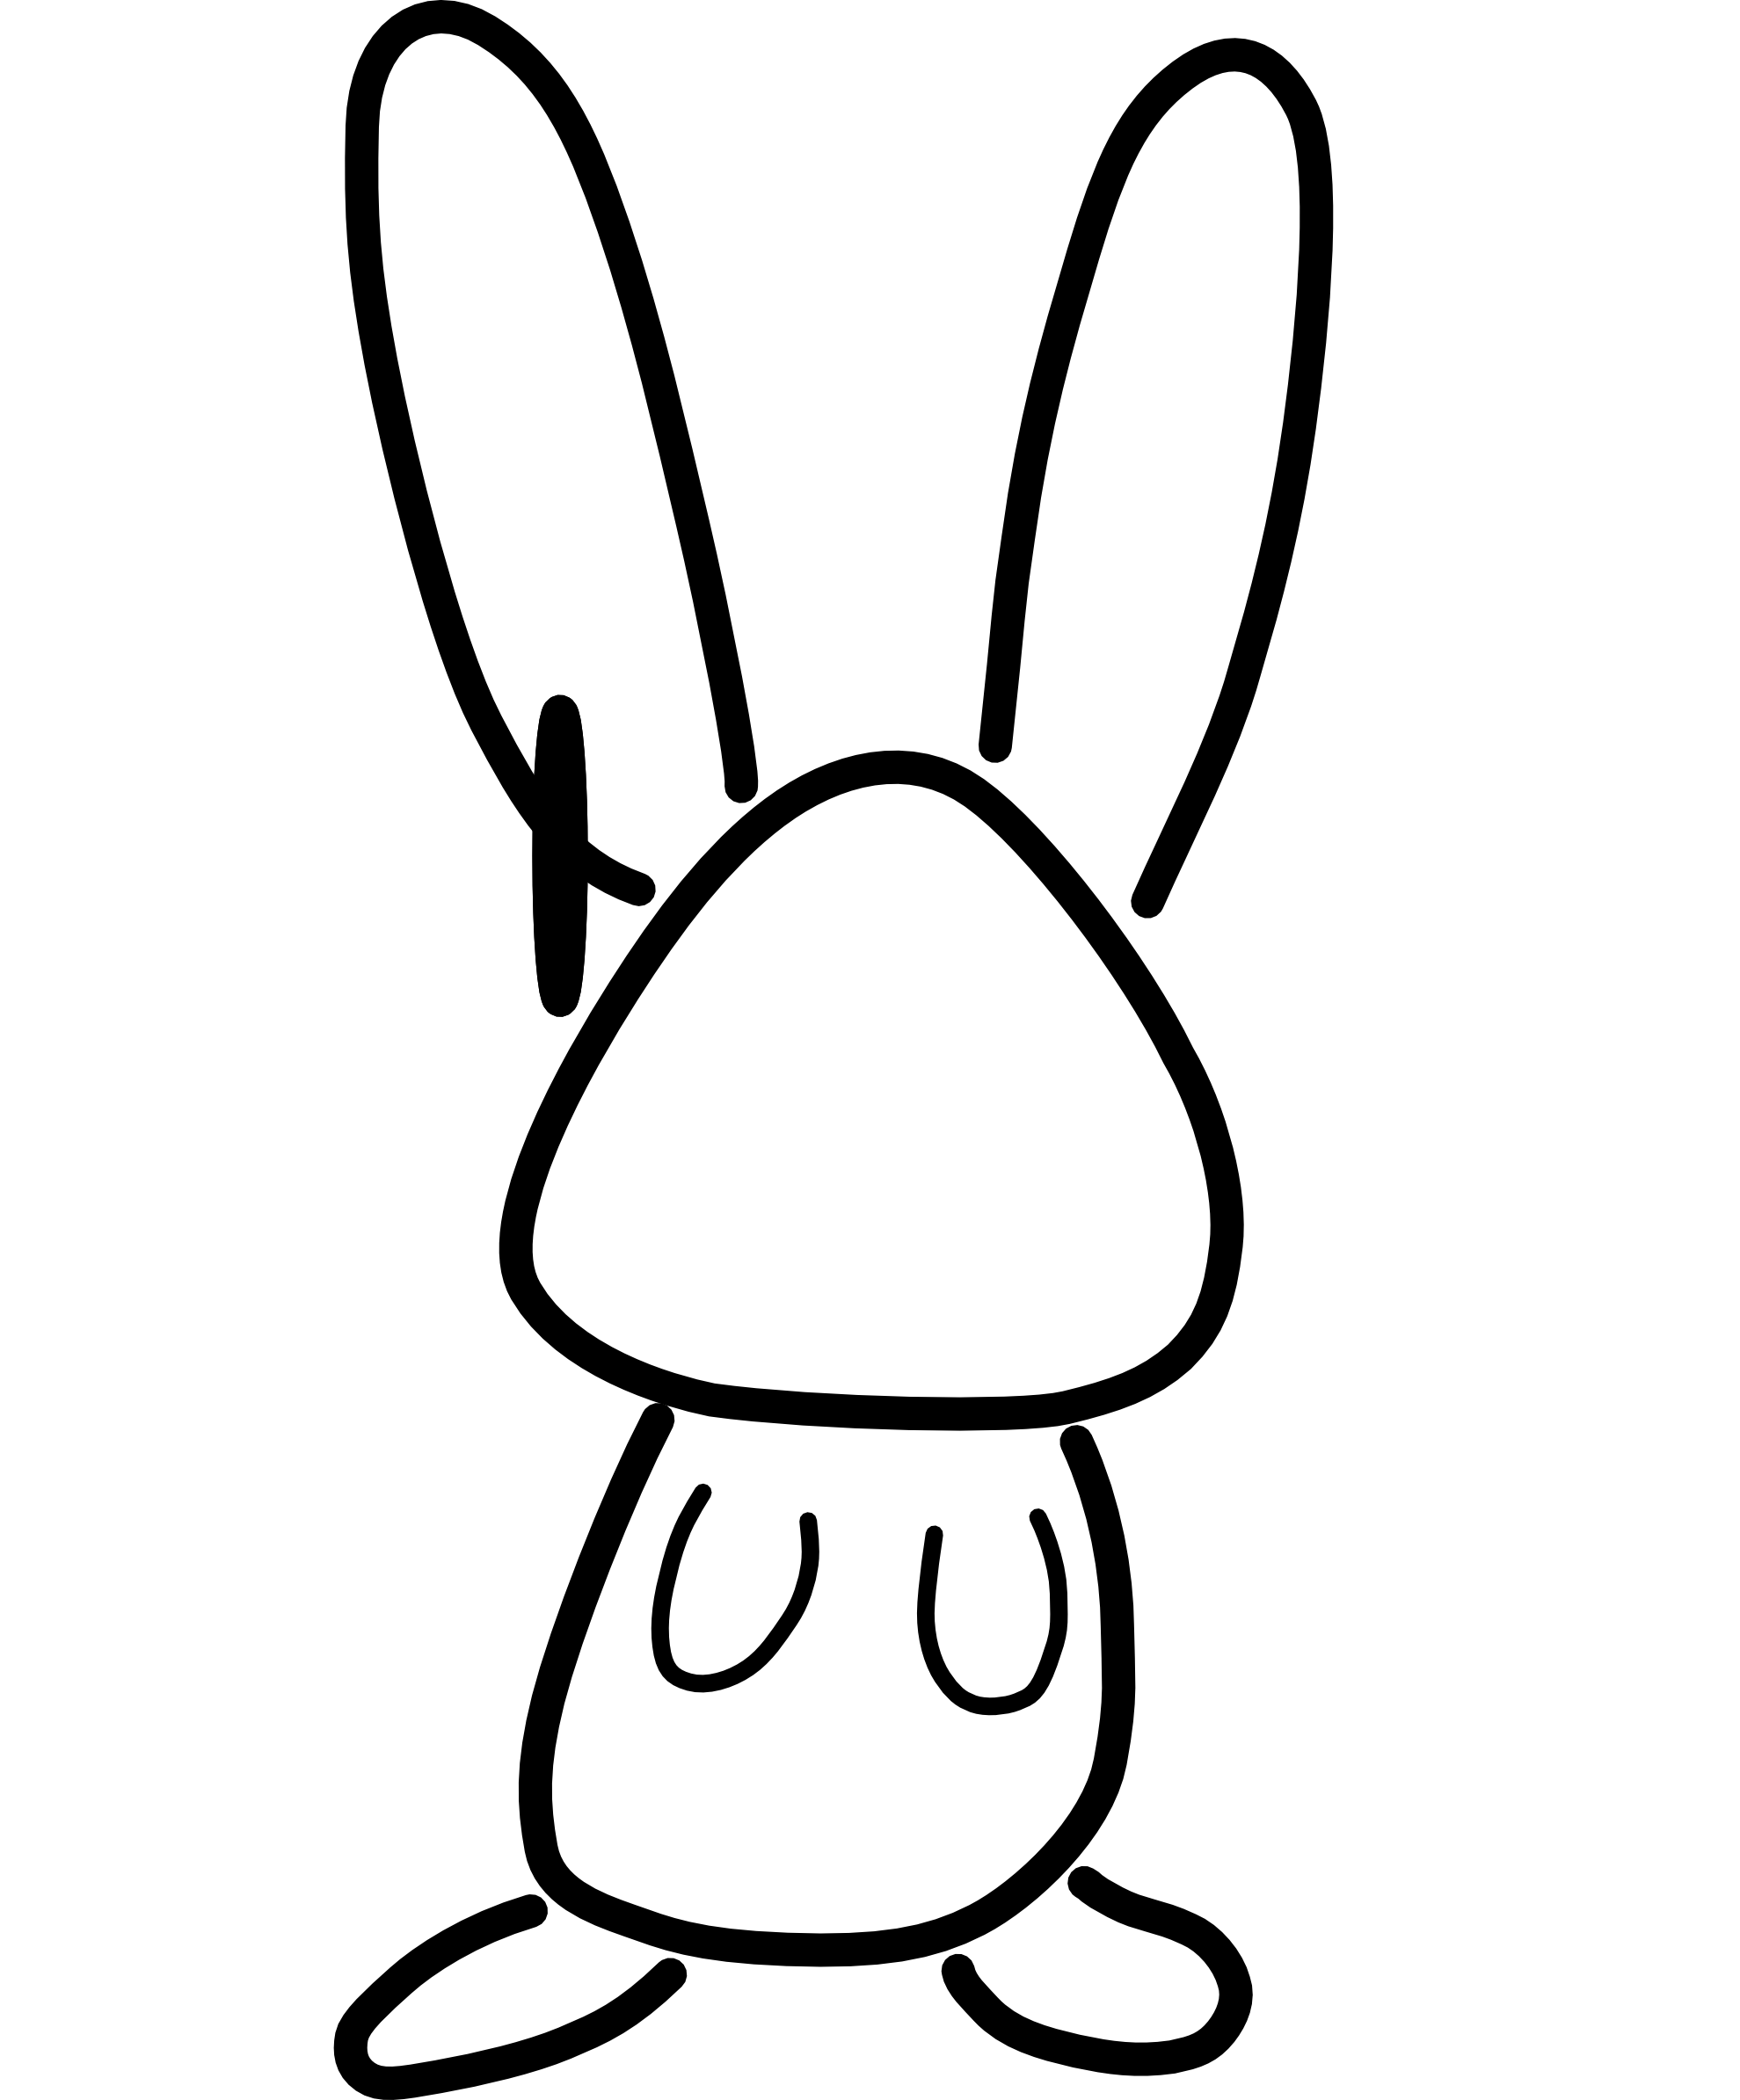 conejo bunny rabbit animal black white line art hunky dory SVG ...